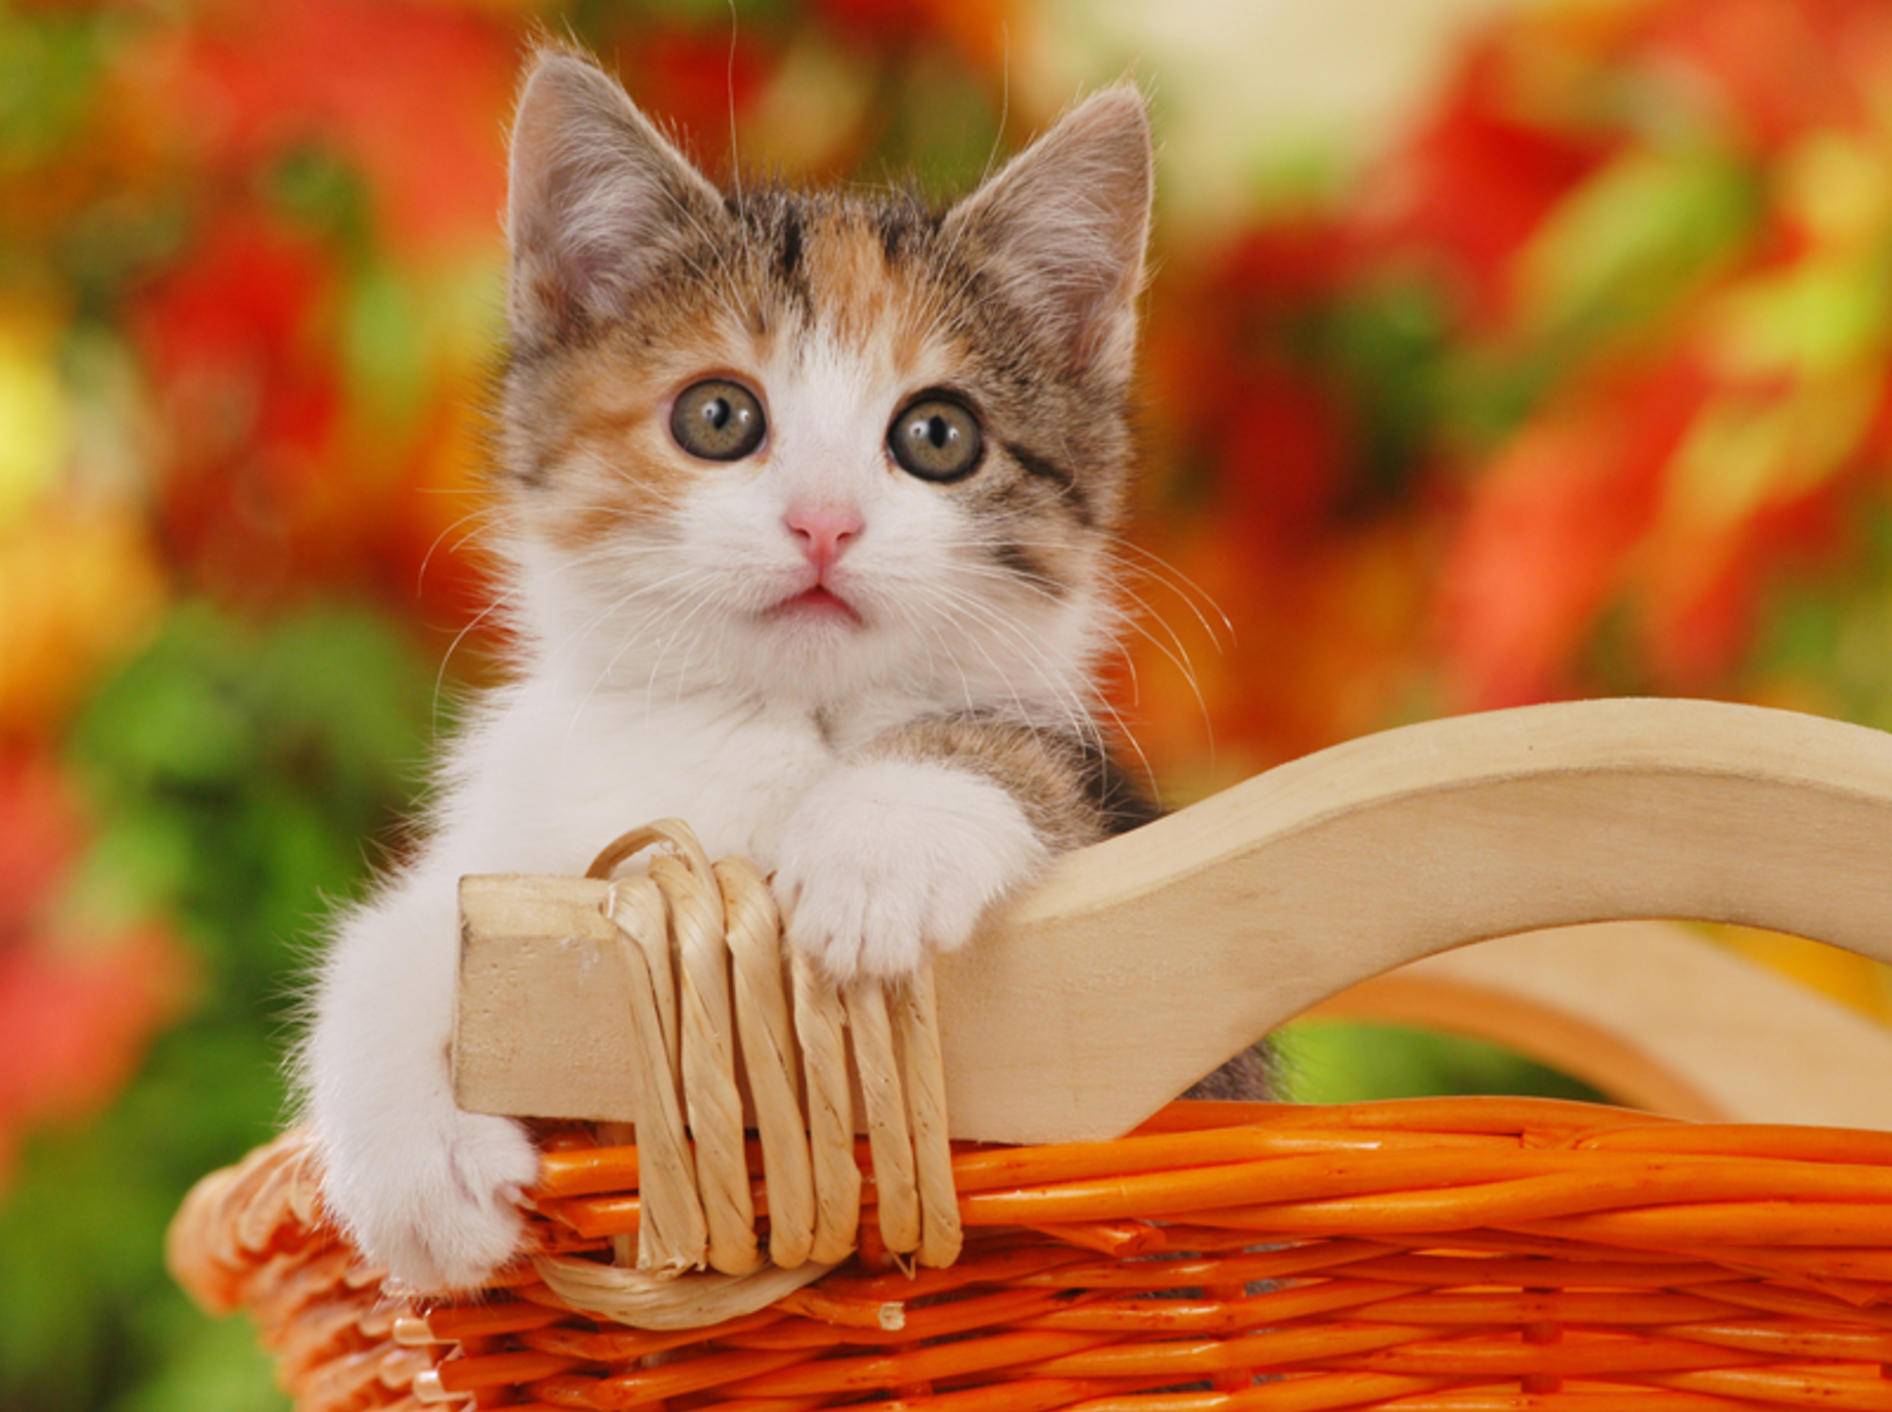 Viele Katzenbabys im Tierheim warten auf ein Herrchen oder Frauchen – Bild: Shutterstock / absolutimages